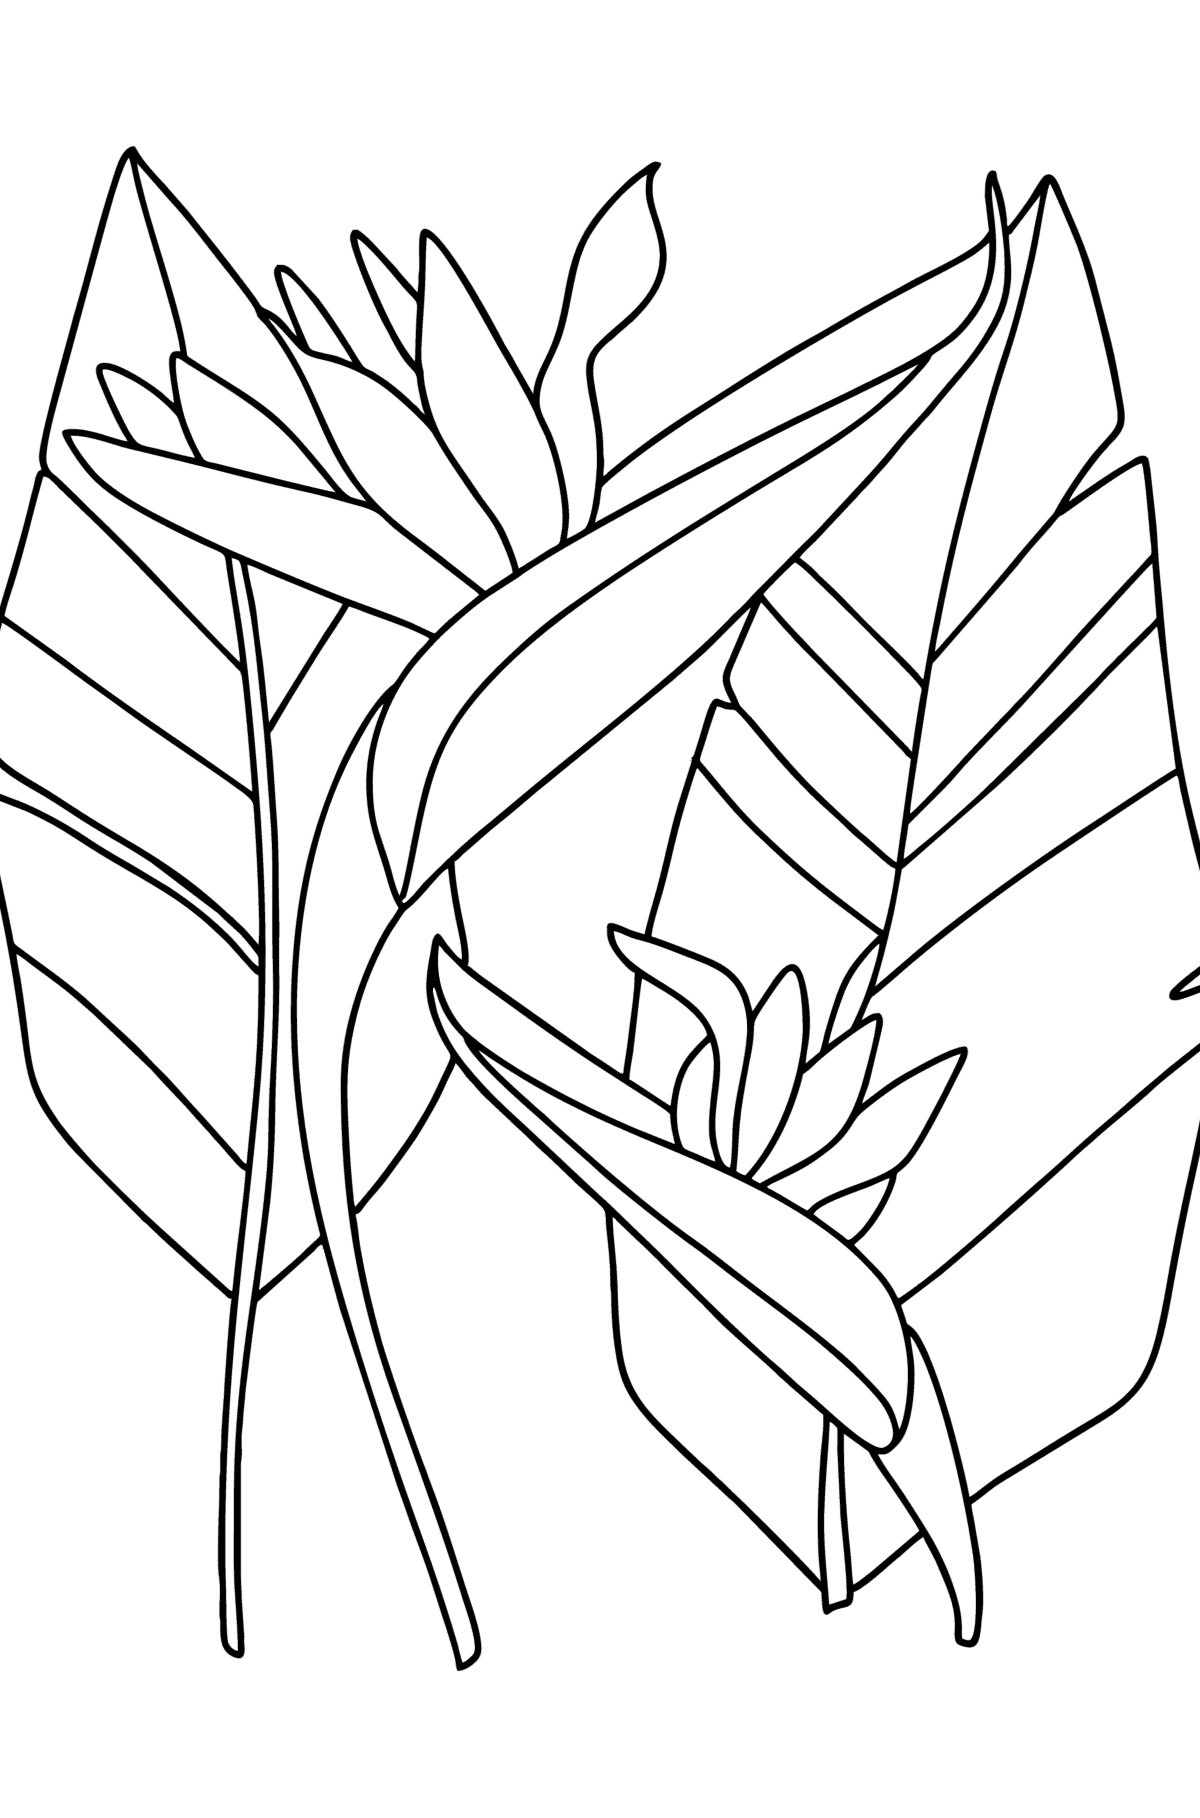 Coloriage Strelitzia - Coloriages pour les Enfants